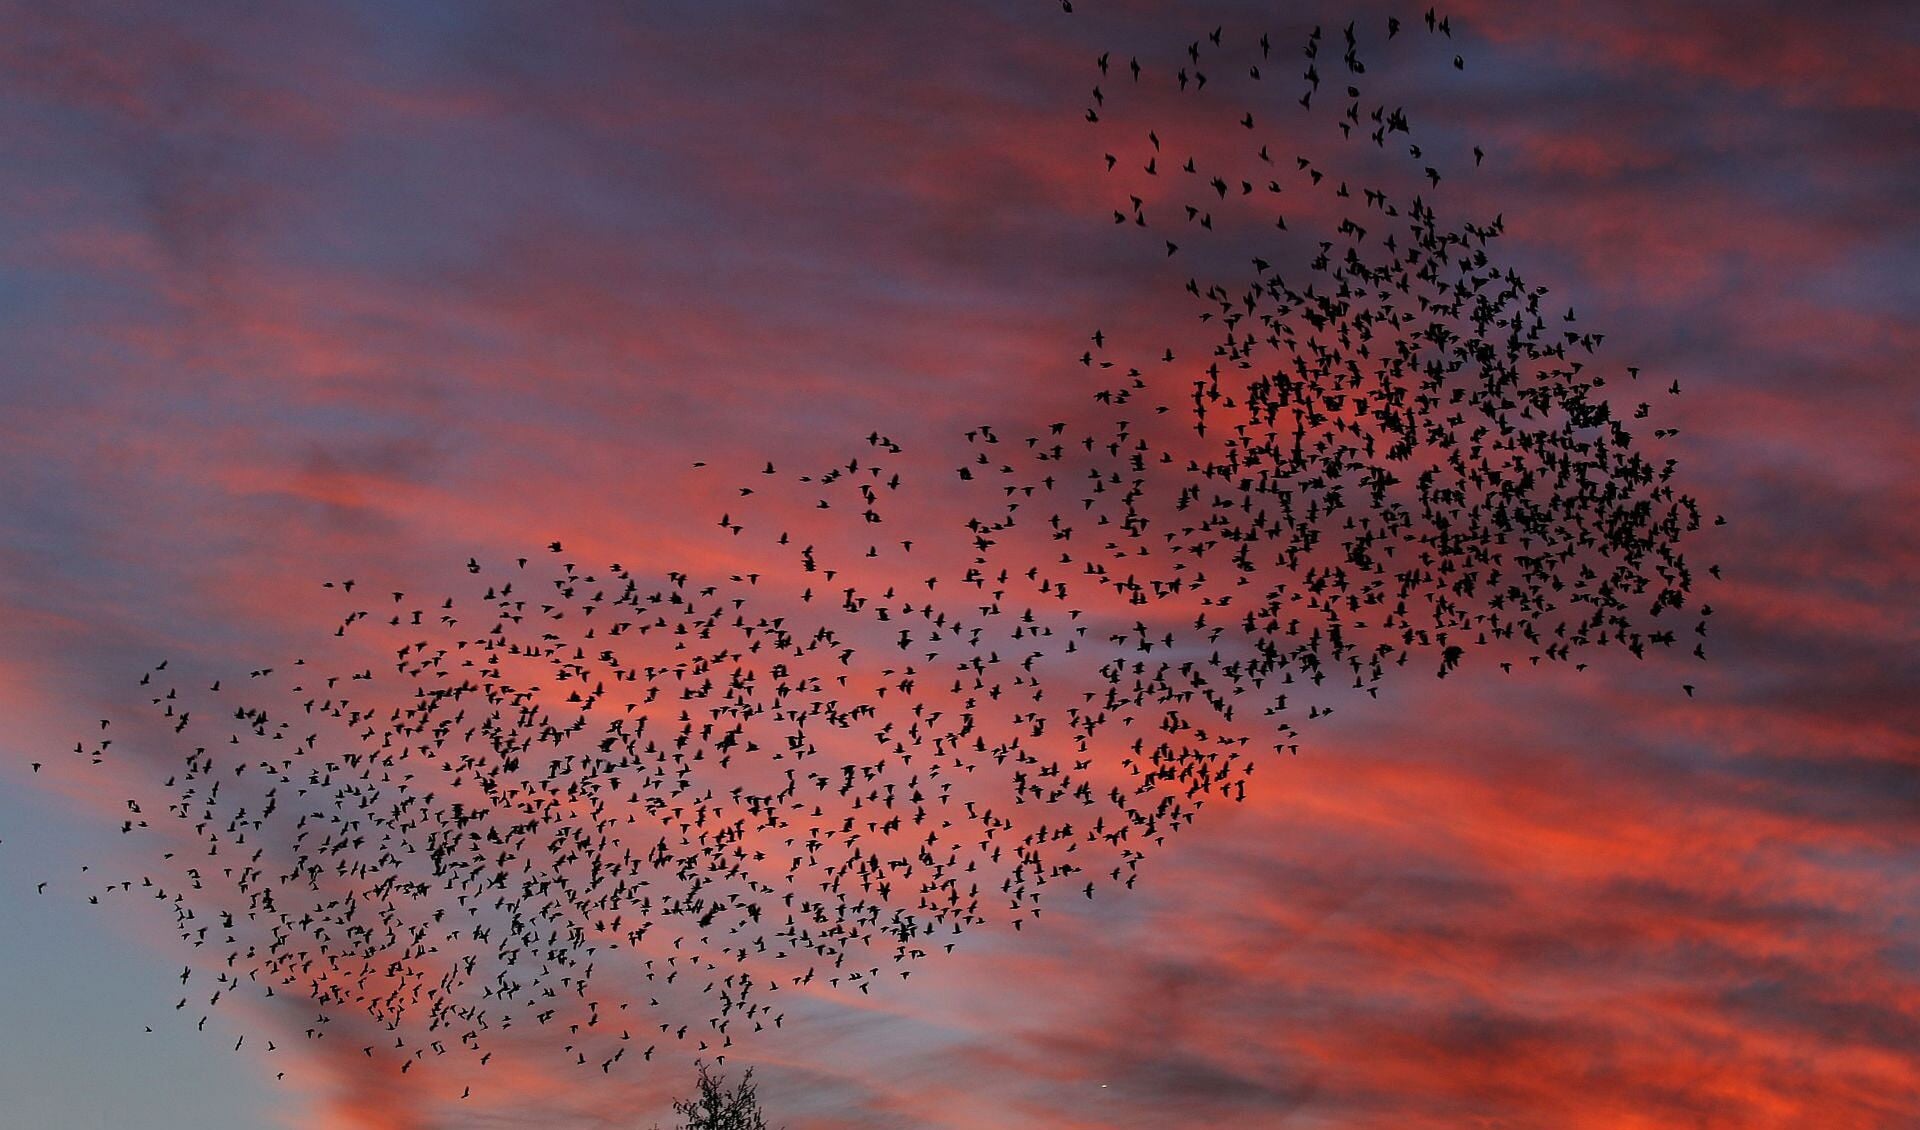 De spreeuwen vlogen van links naar rechts en van boven naar beneden. Een adembenemend gezicht. (Foto: Walter Hollenkamp)